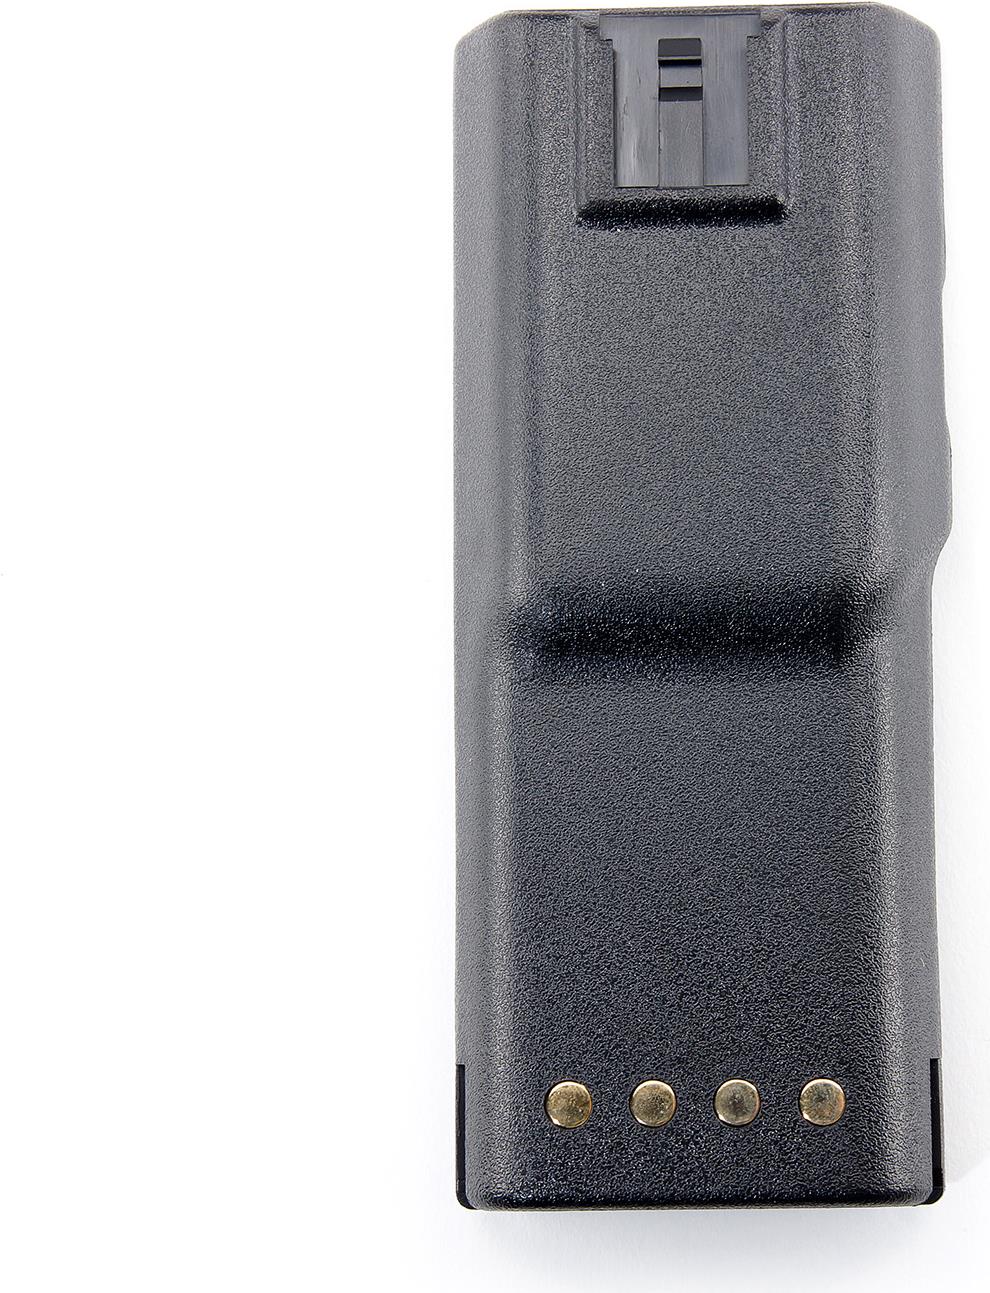 BatStar NiCd-Akku, 1200 mAh, 7,2 V, für Motorola GP300/GP600 LxBxH: 14,15 x 5,81 x 1,81 cm, kompatibel zu Original-AkkuHNN9628. ACHTUNG! Lieferumfang ab 2015: OHNE Clip!Zum Laden des Akkus werden die BatStar Ladegeräte BSC-4613(#160918) oder BSC-2001